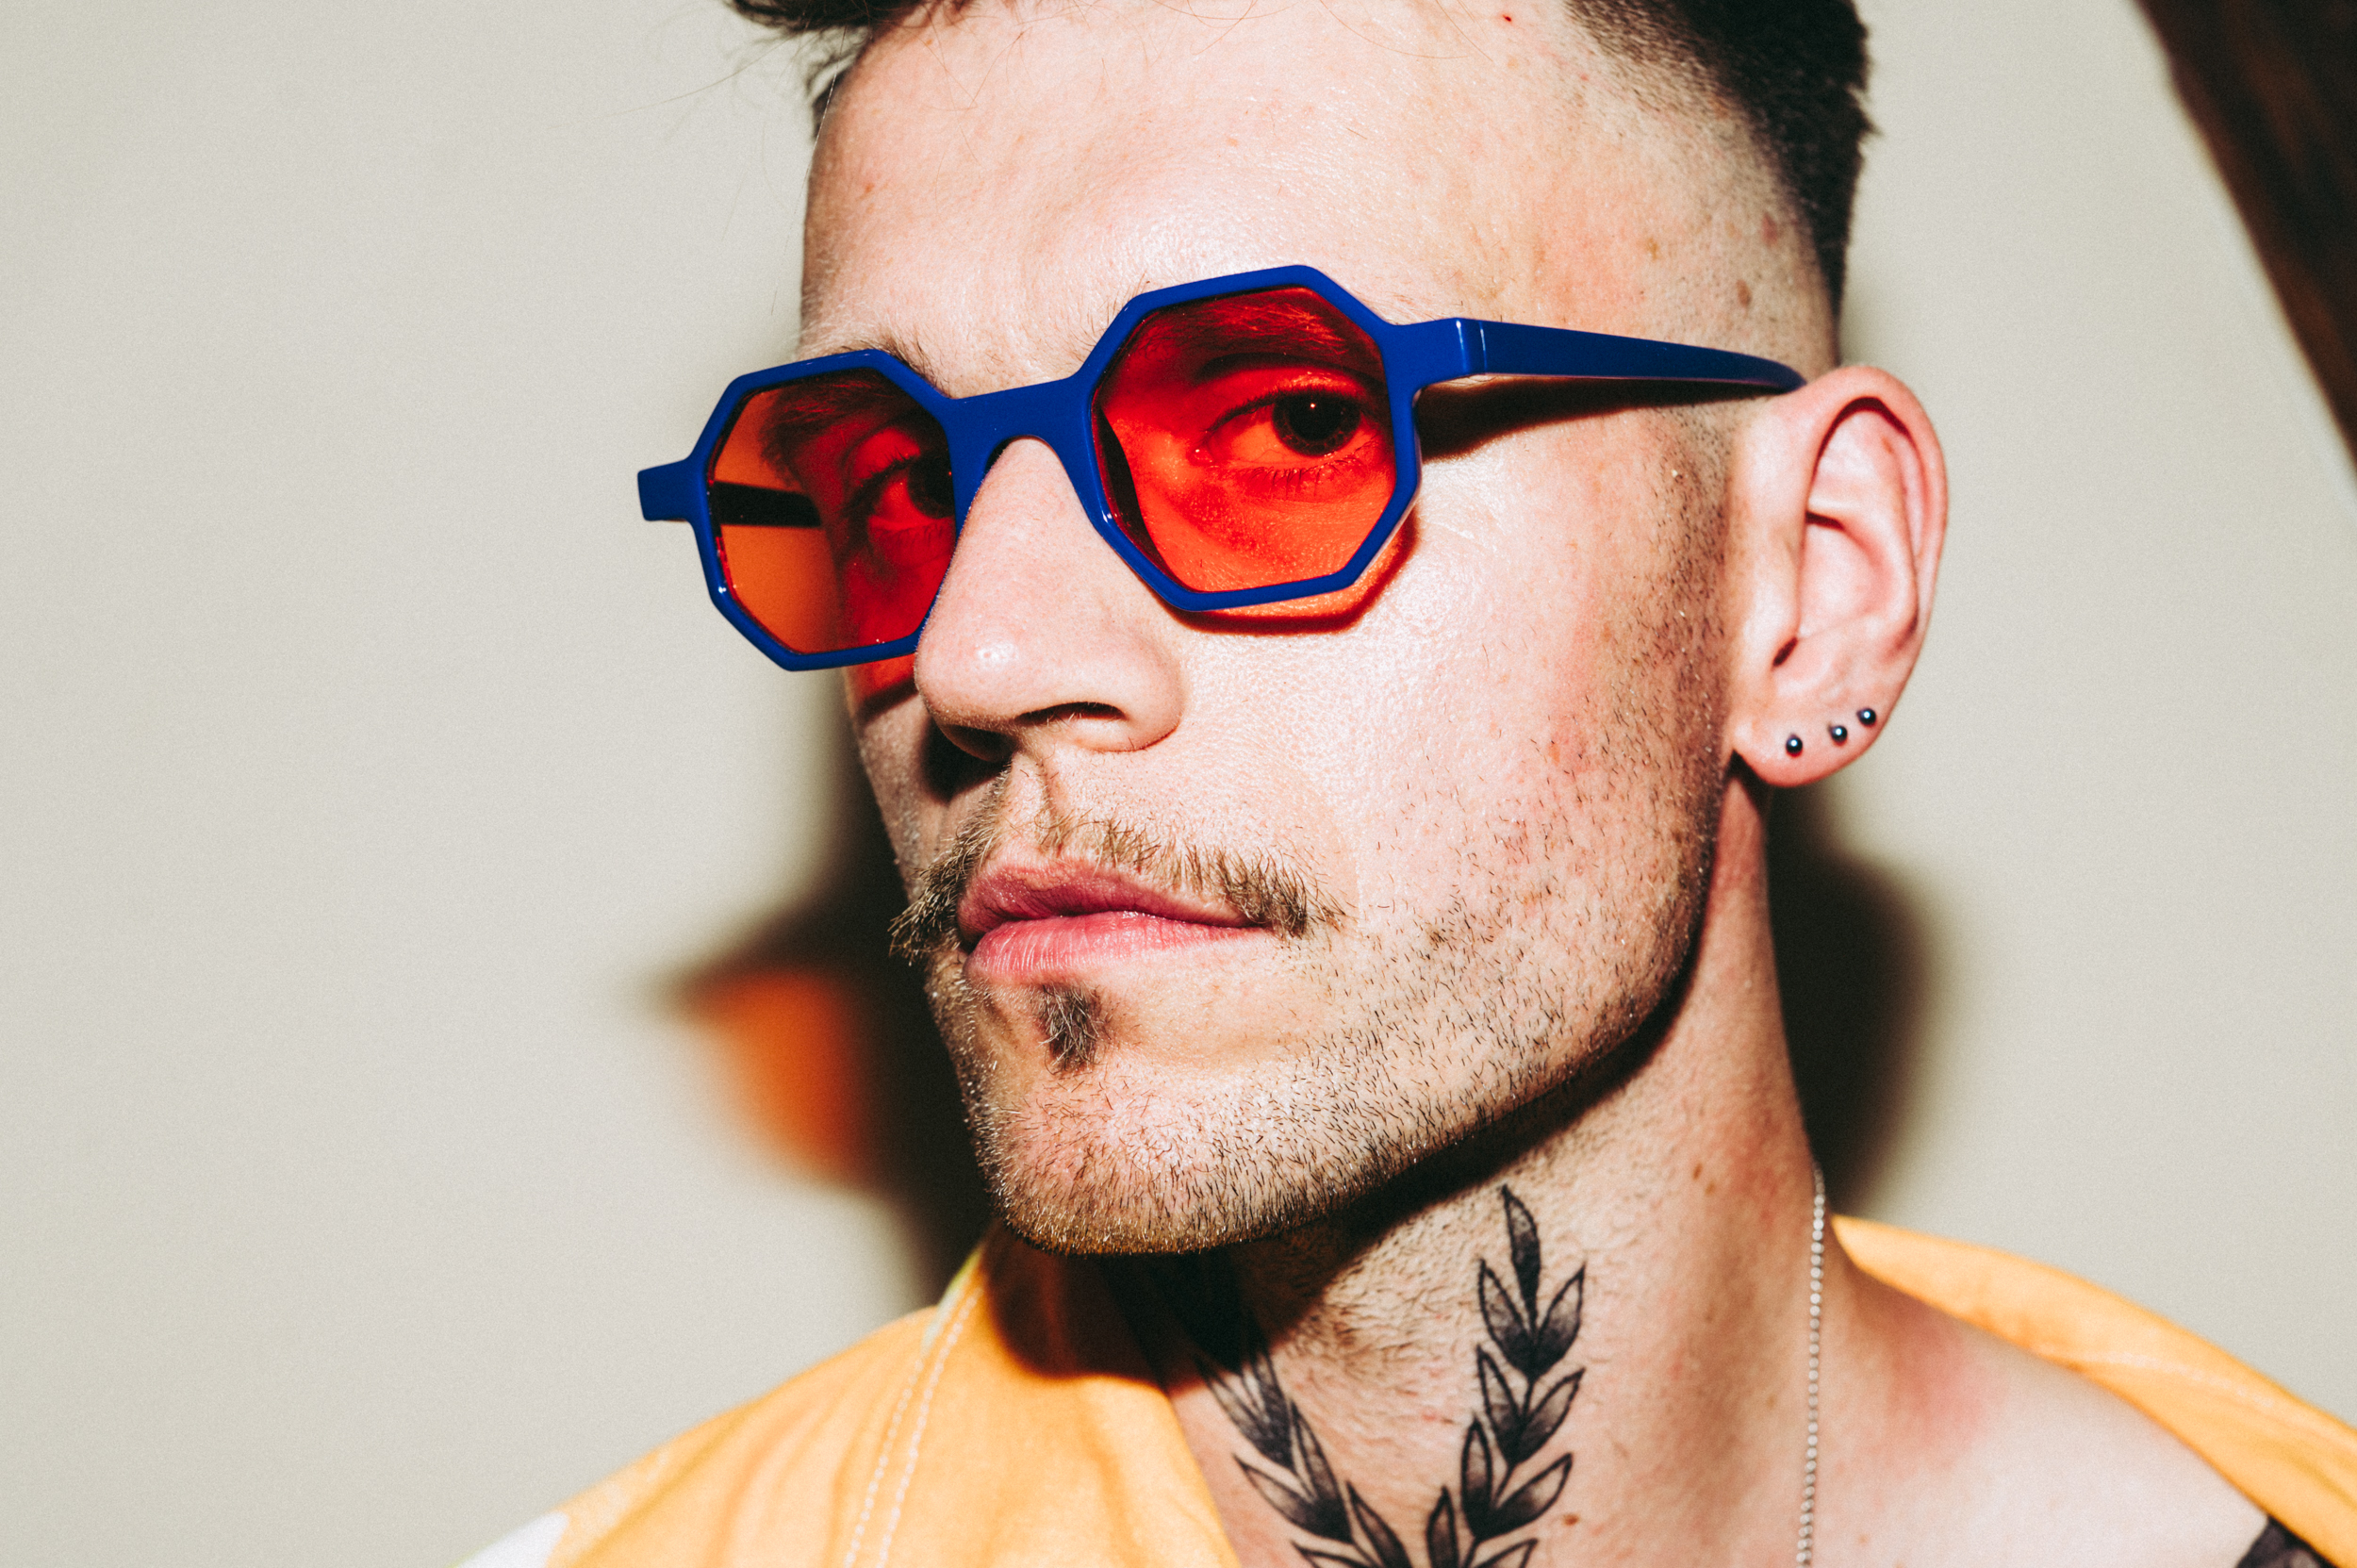 Portret. Młody mężczyzna w okularach z czerwonopomarańczowymi szkłami i ciemnoniebieskimi oprawkami. W uchu ma trzy niewielkie, kuliste kolczyki, a na szyi tatuaż przedstawiający dwie splecione gałązki.